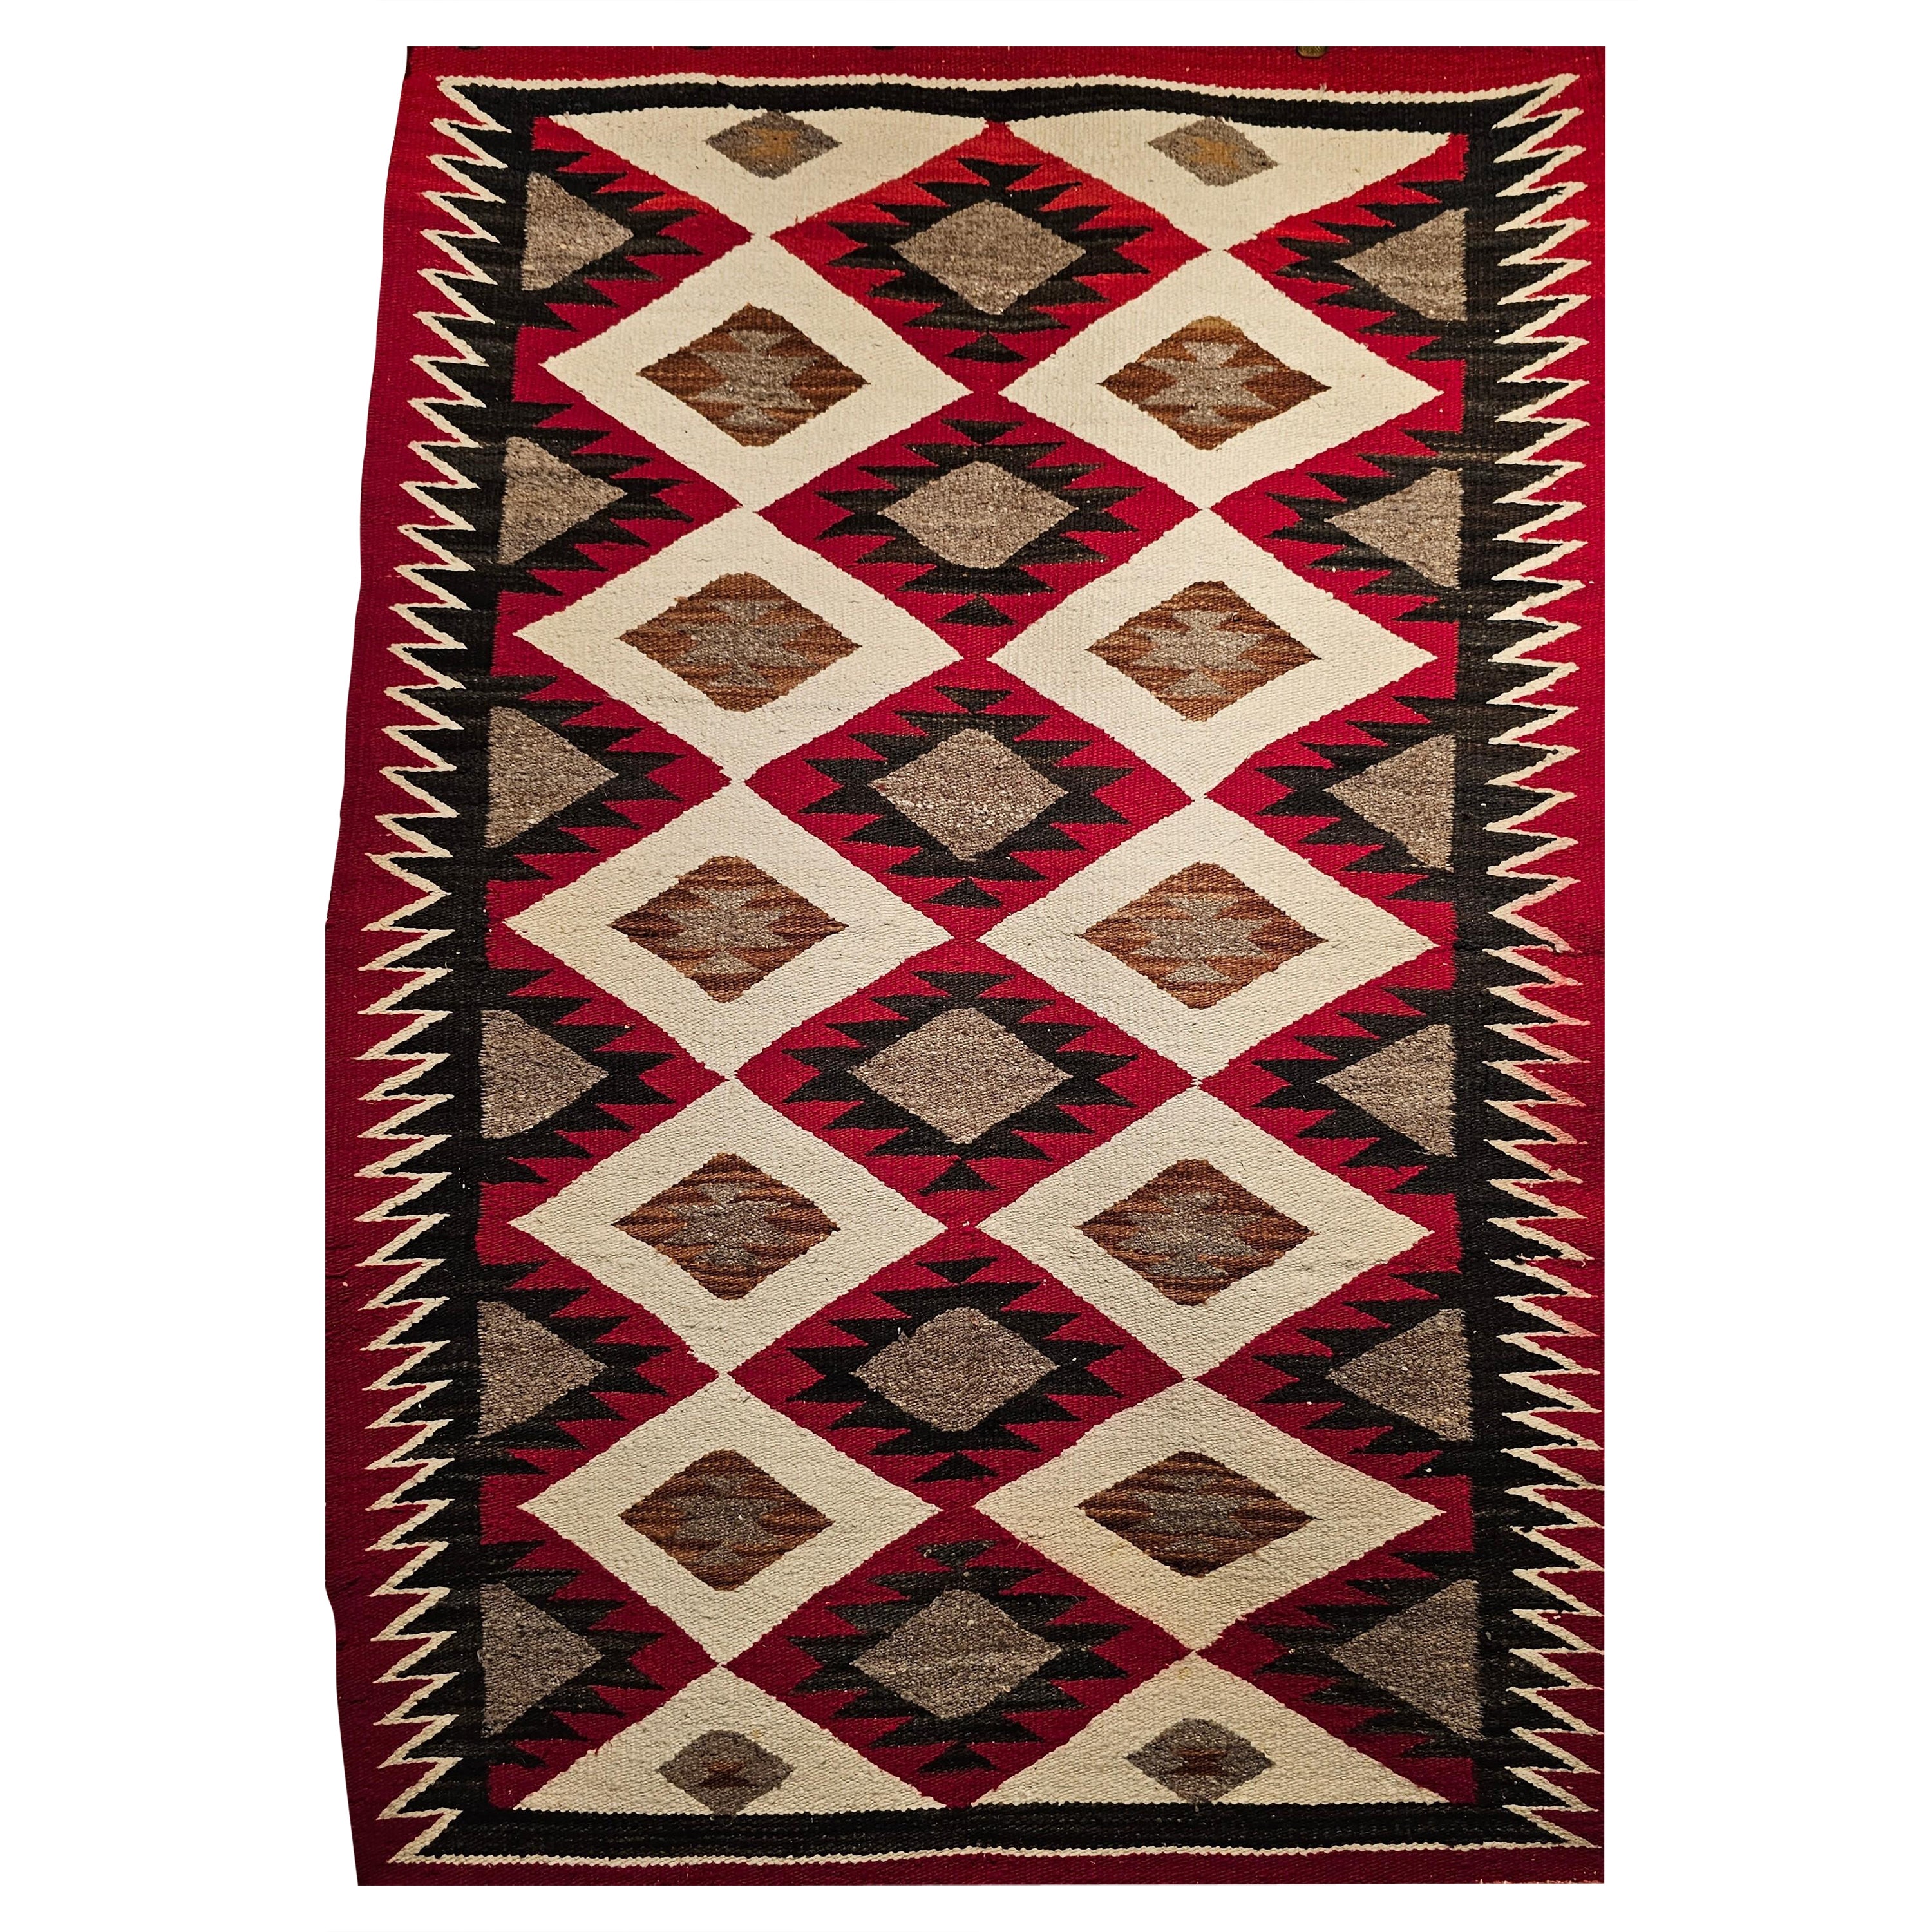 Amerikanischer Navajo-Teppich im Vintage-Vintage-Stil mit Eye Dazzler-Muster in Rot, Elfenbein, Grau, Schwarz